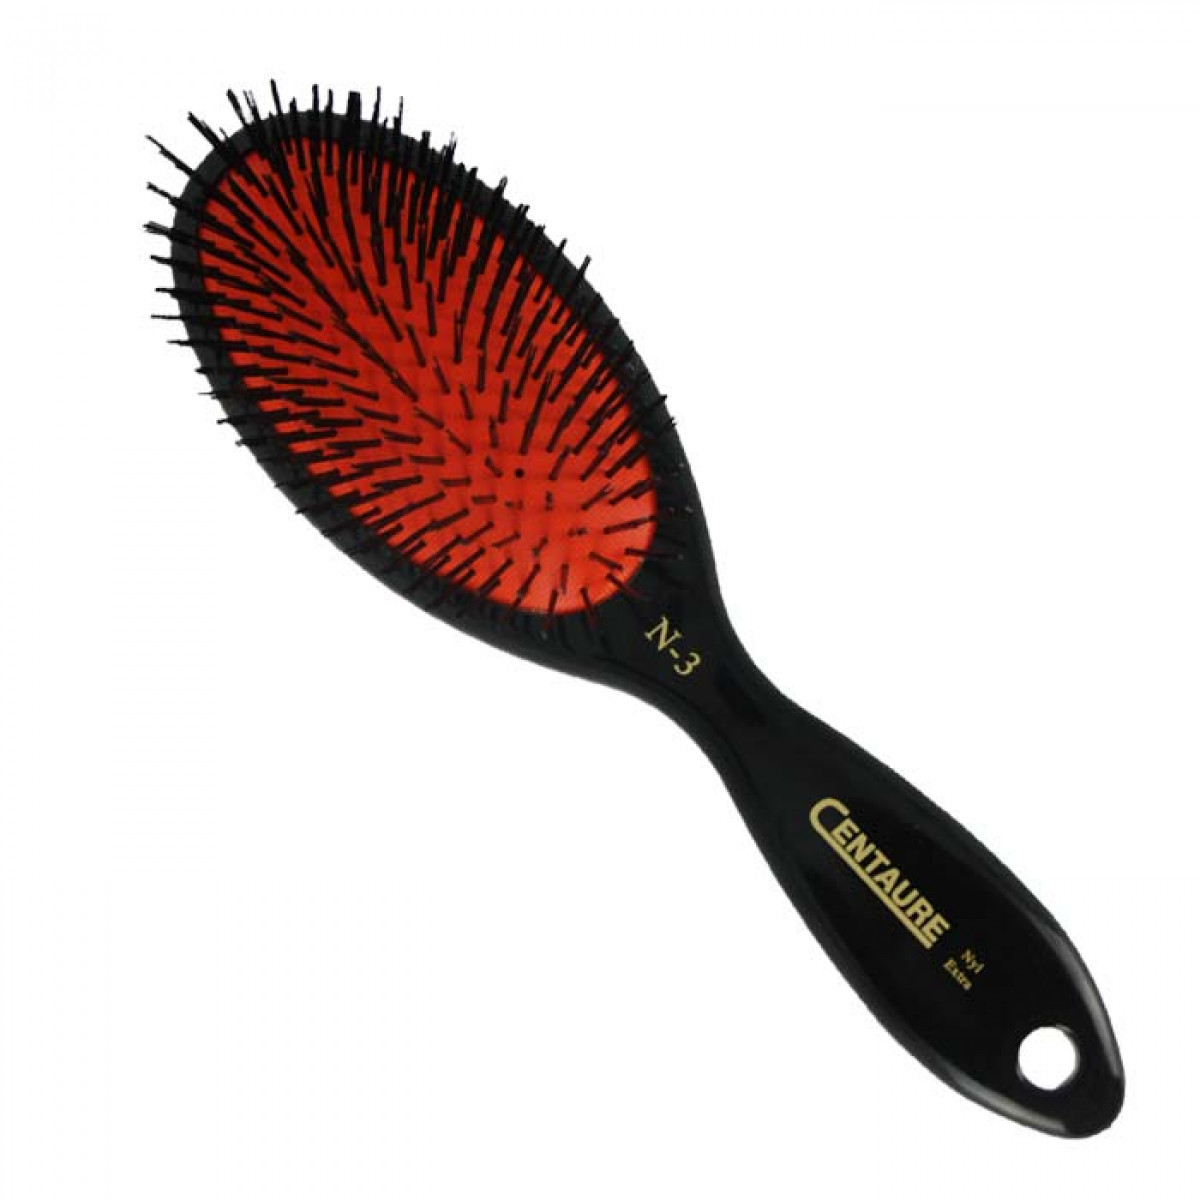 la brosse à cheveux estipharm est une brosse pneumatique adaptée à tout  cuir chevelu